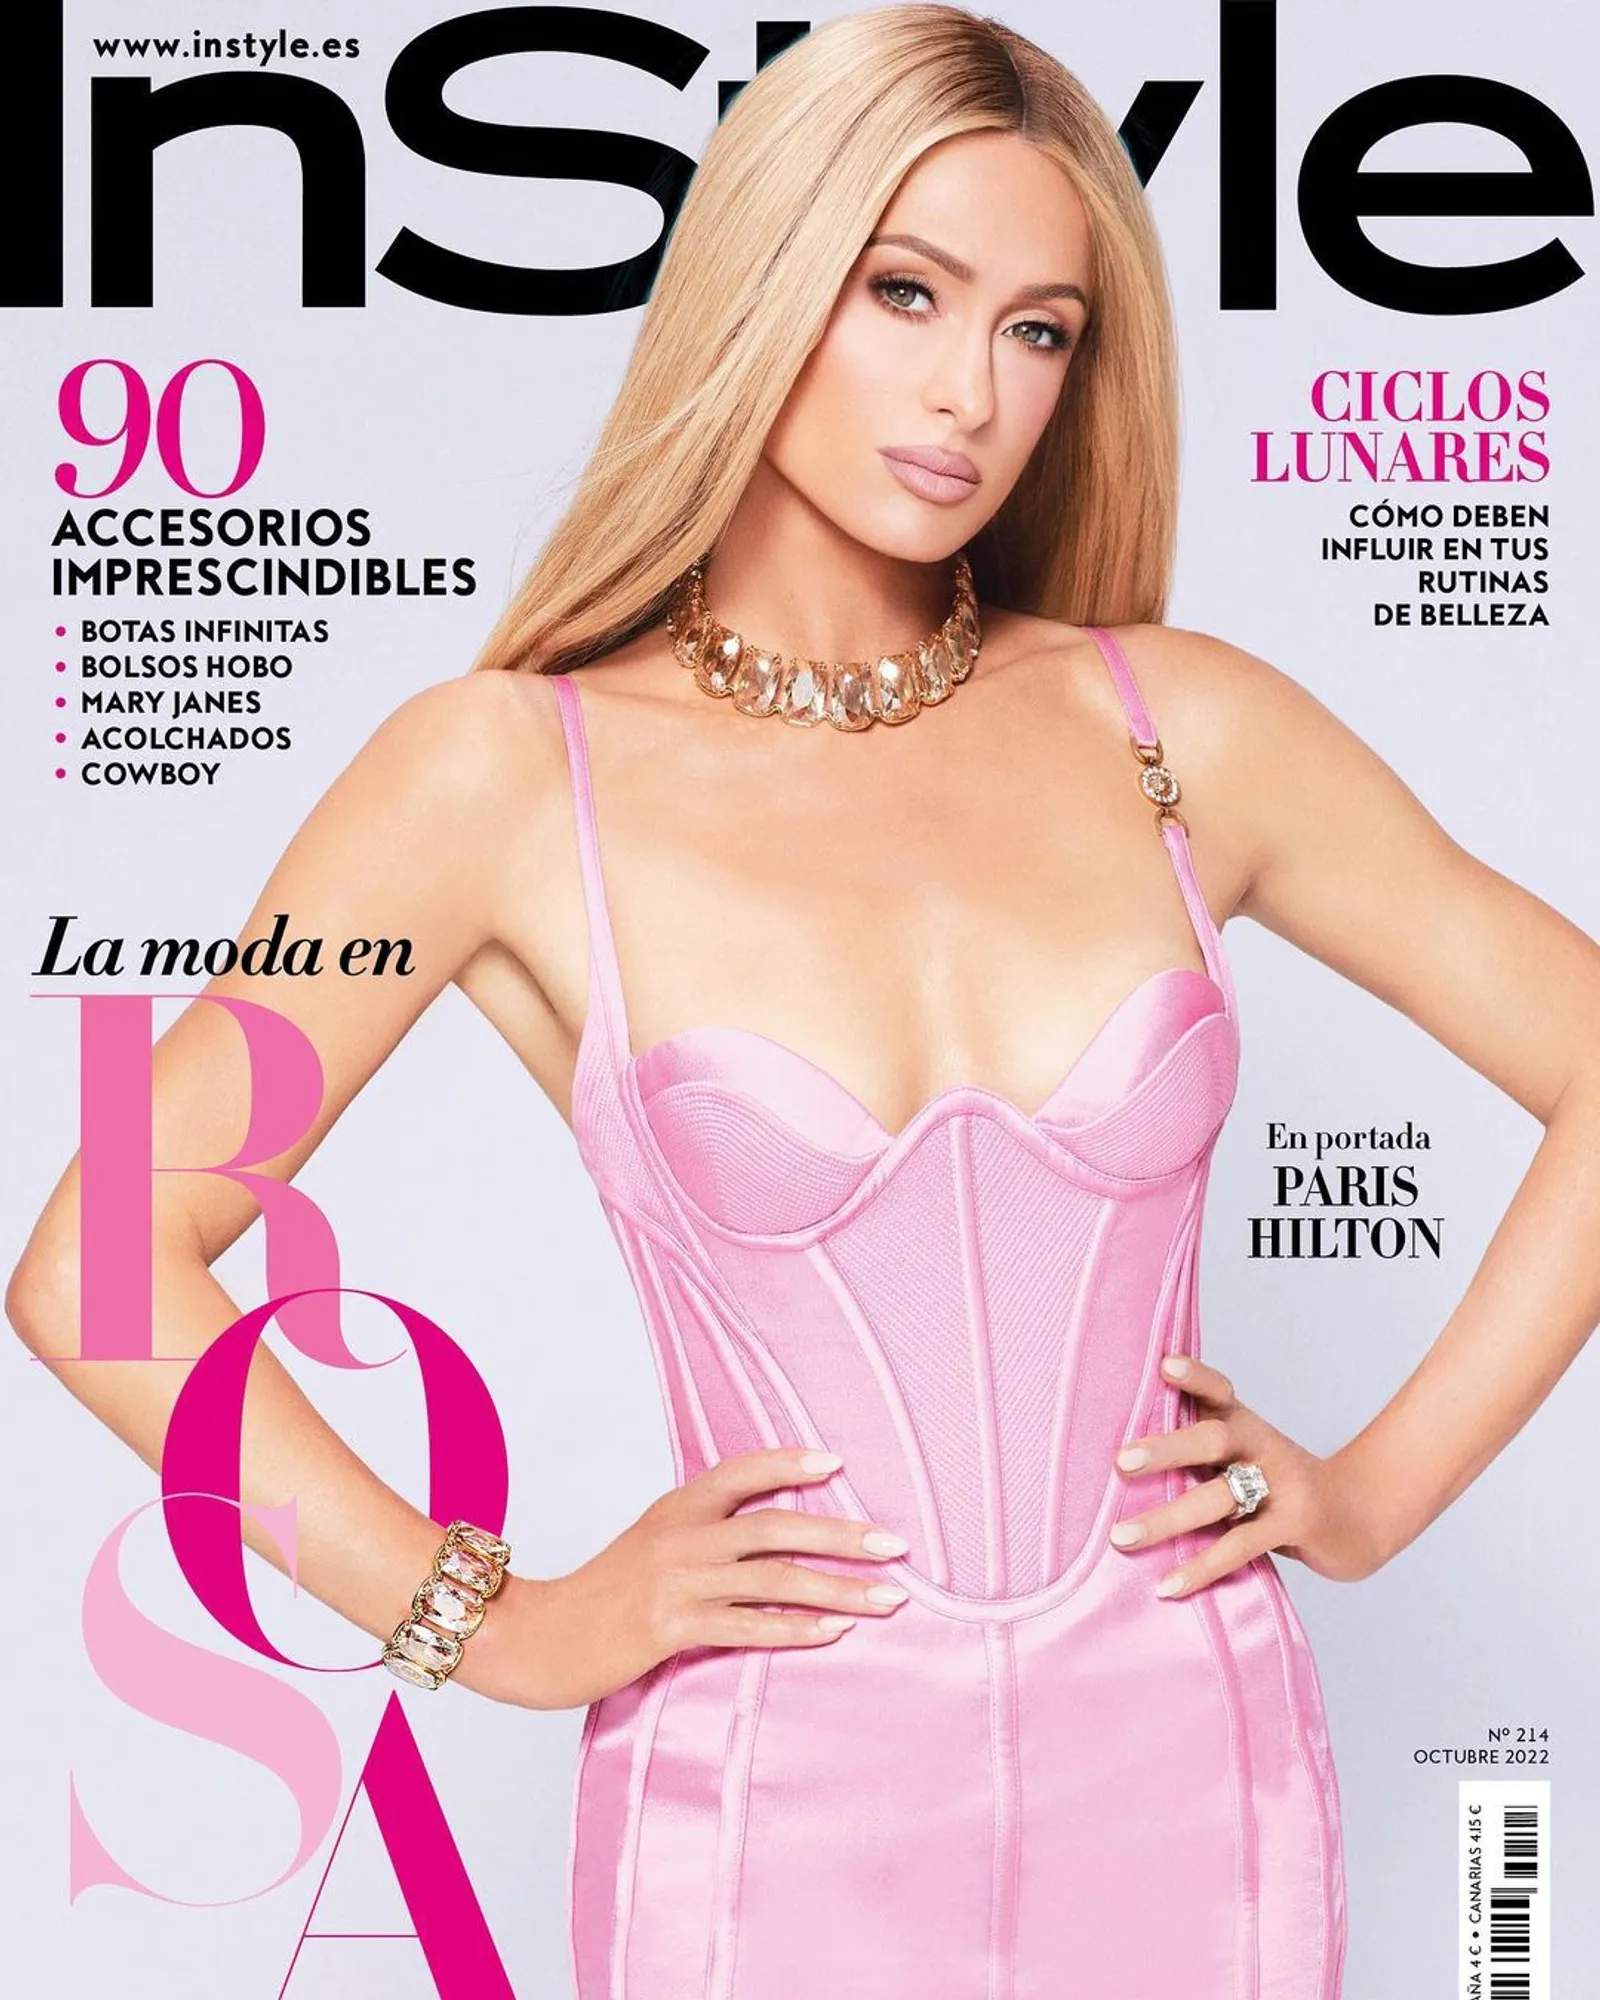 7 Bukti Gaya Paris Hilton yang Mirip dengan Boneka Barbie